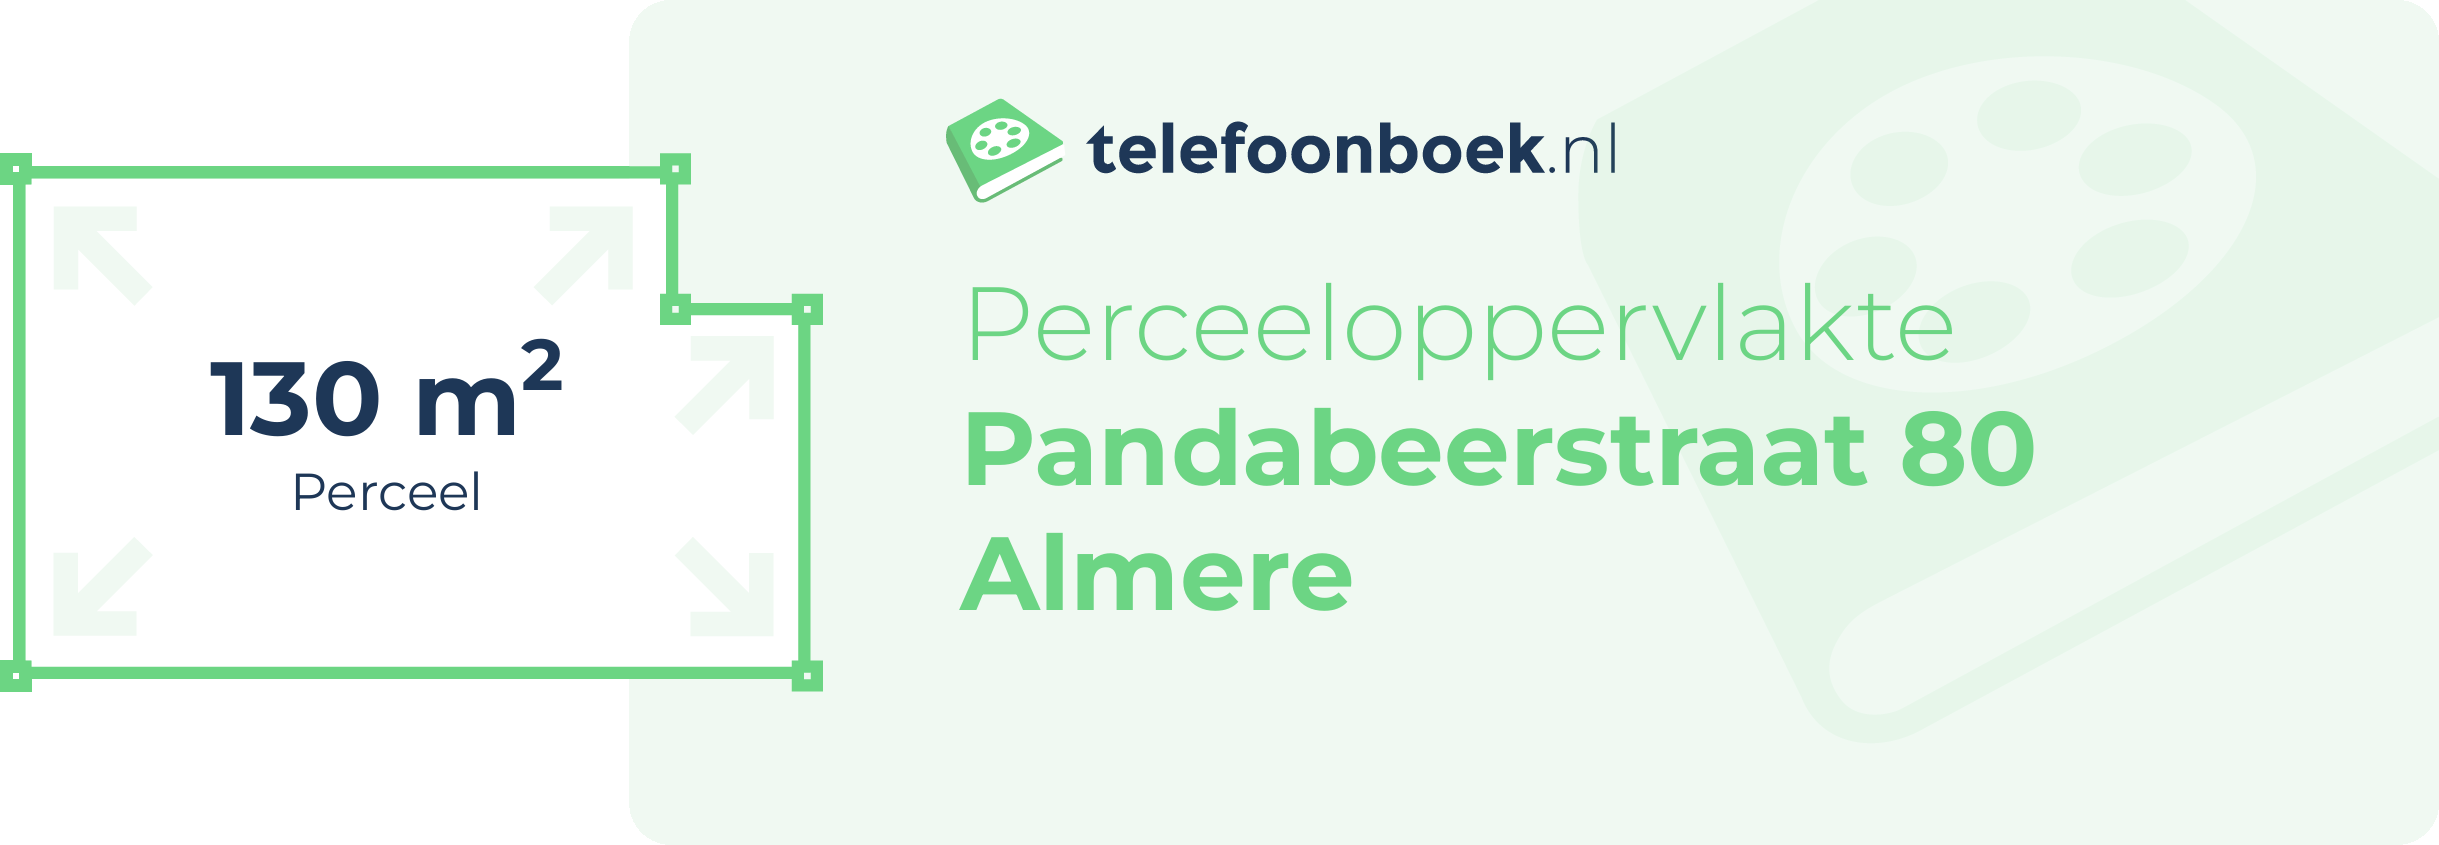 Perceeloppervlakte Pandabeerstraat 80 Almere